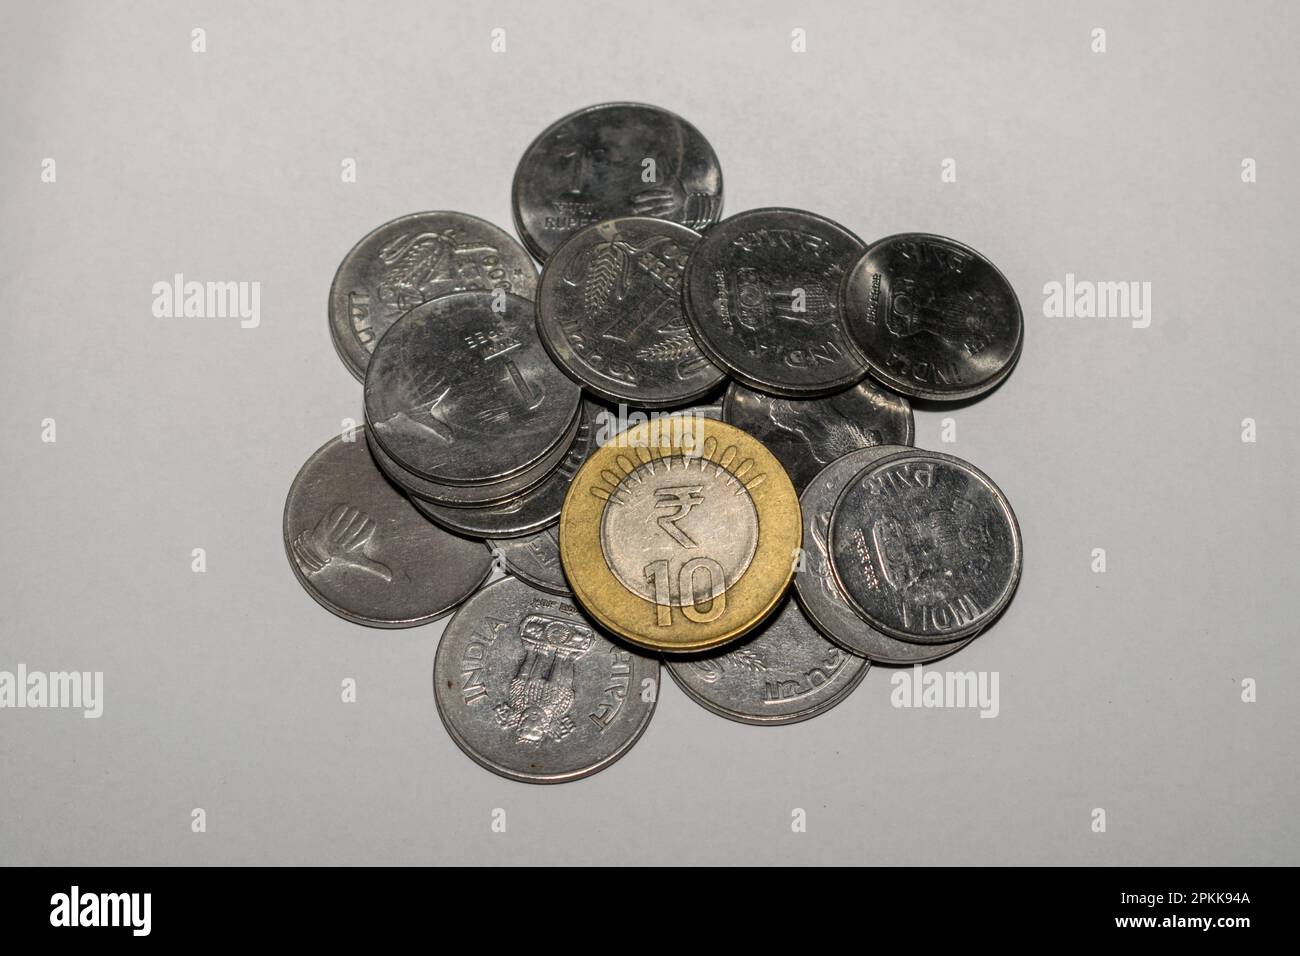 Sammlung indischer Rupien-Währungsmünzen auf weißem Hintergrund Stockfoto